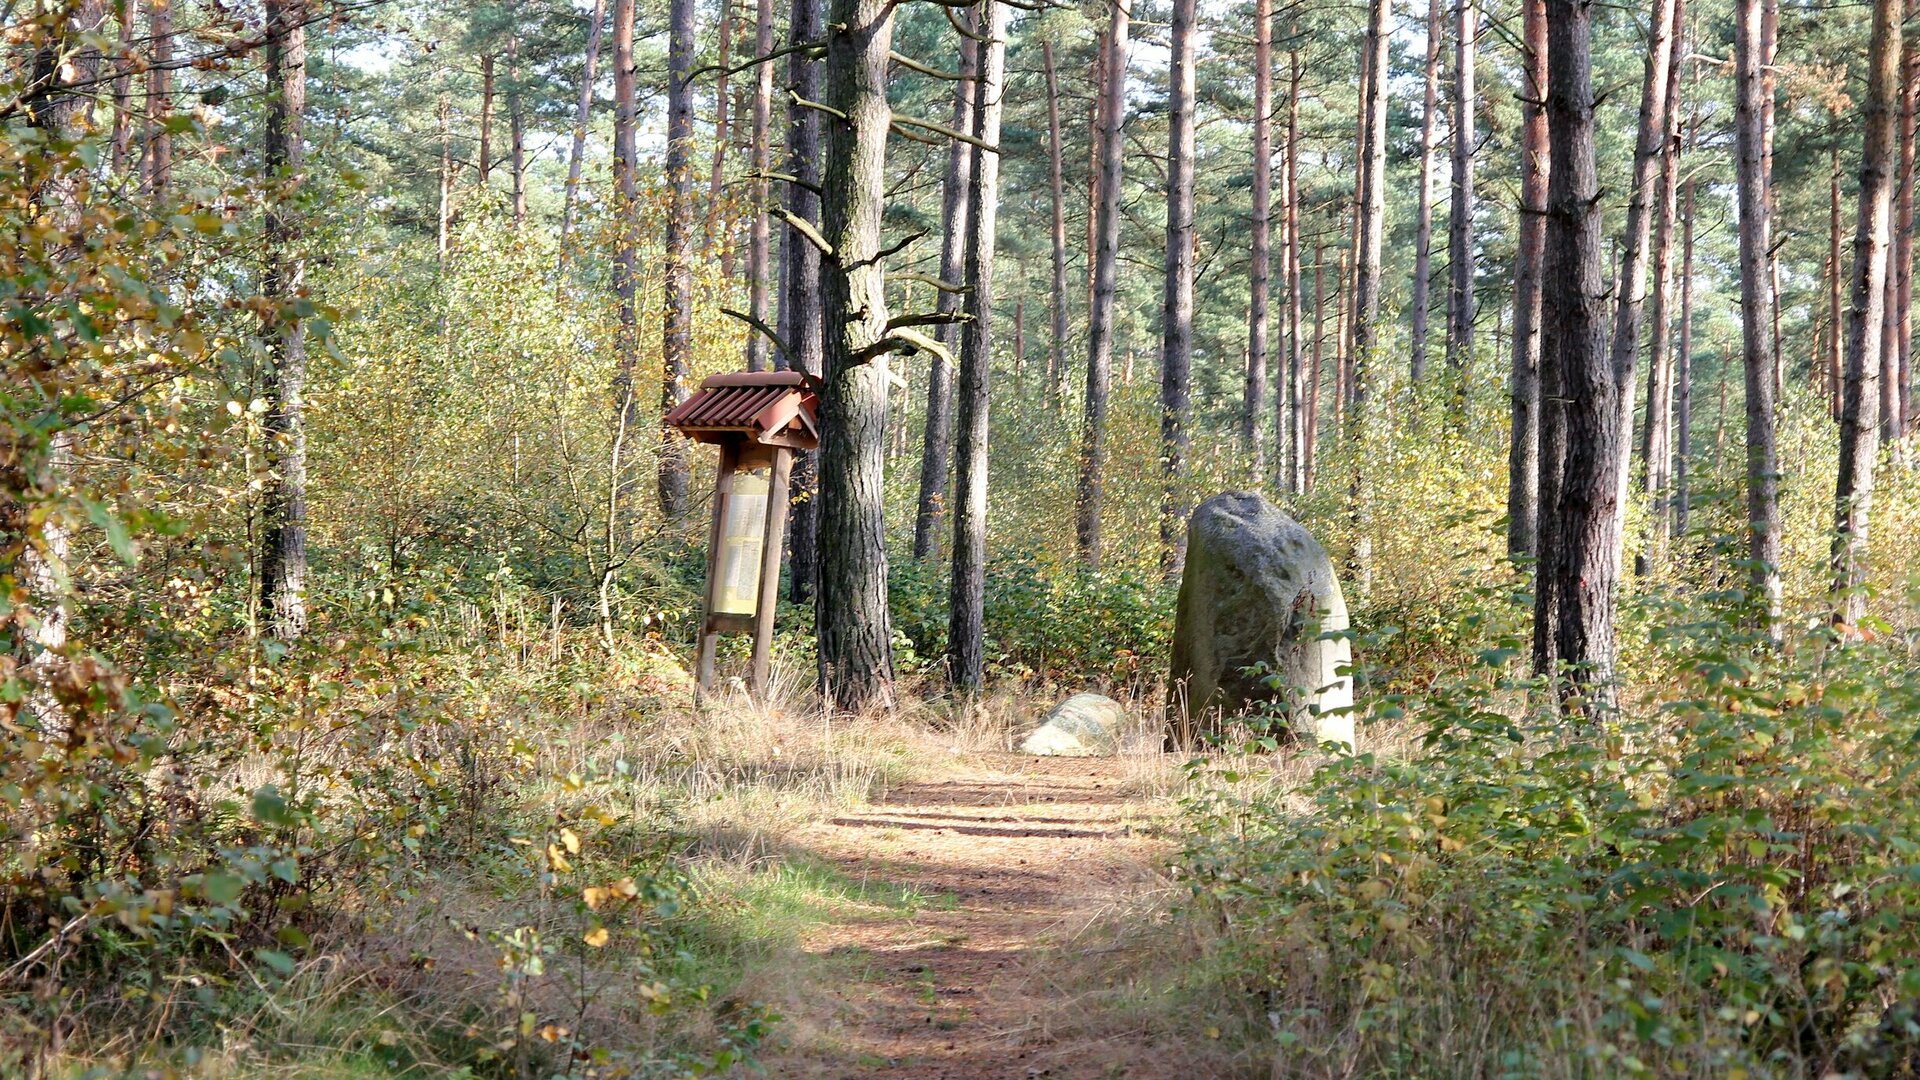 Blick auf die im Wald gelegenen "Brautsteine" bei Schmölau - zwei mächtige Findlinge mit "sagenhafter" Geschichte